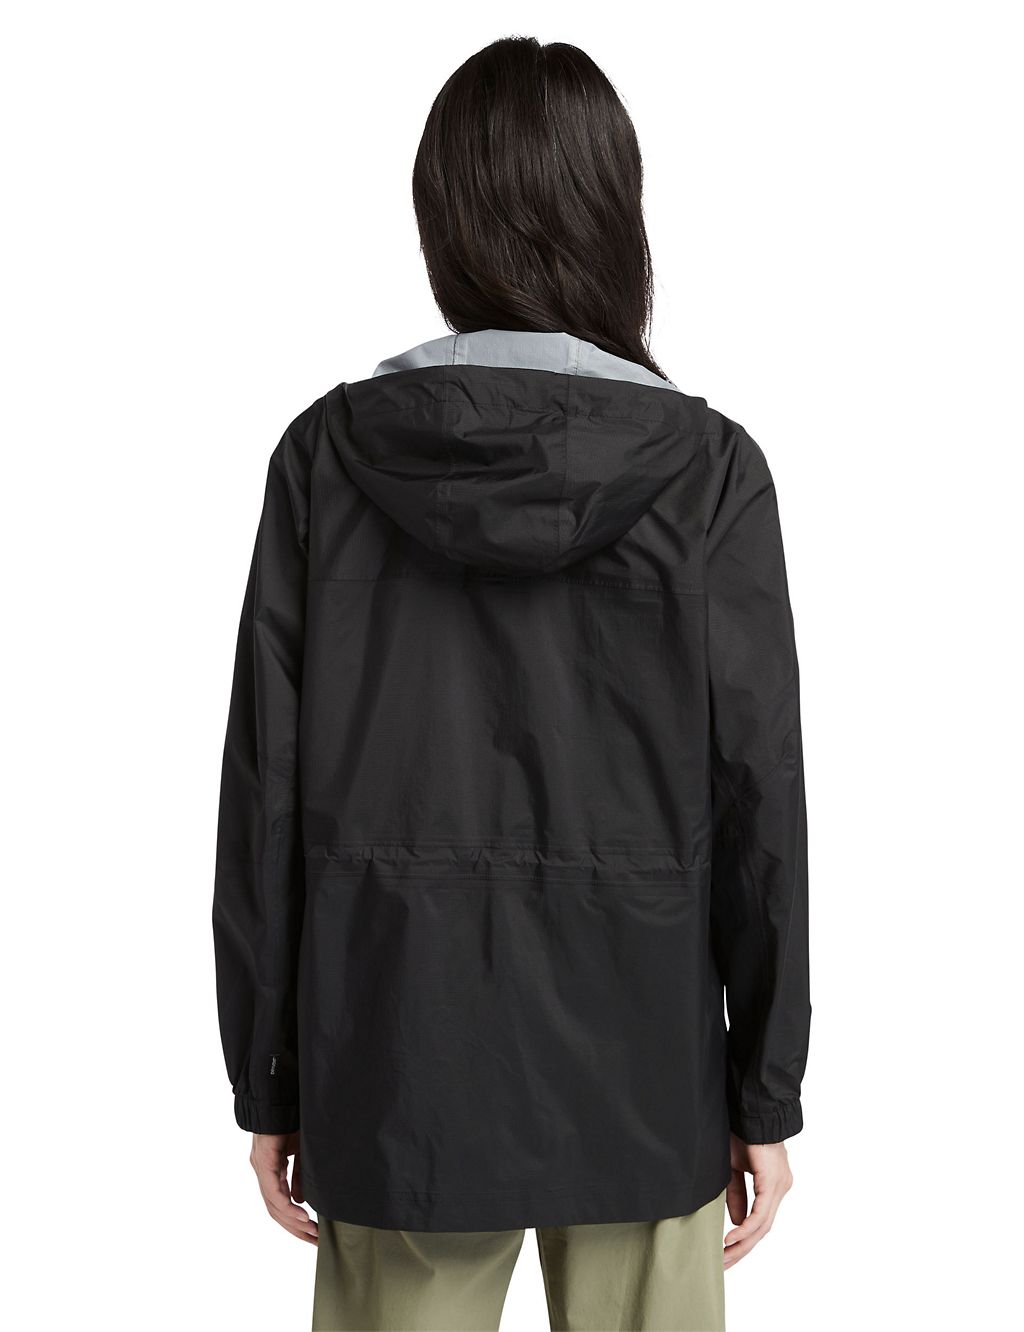 Jenness Waterproof Hooded Packaway Rain Jacket 2 of 5